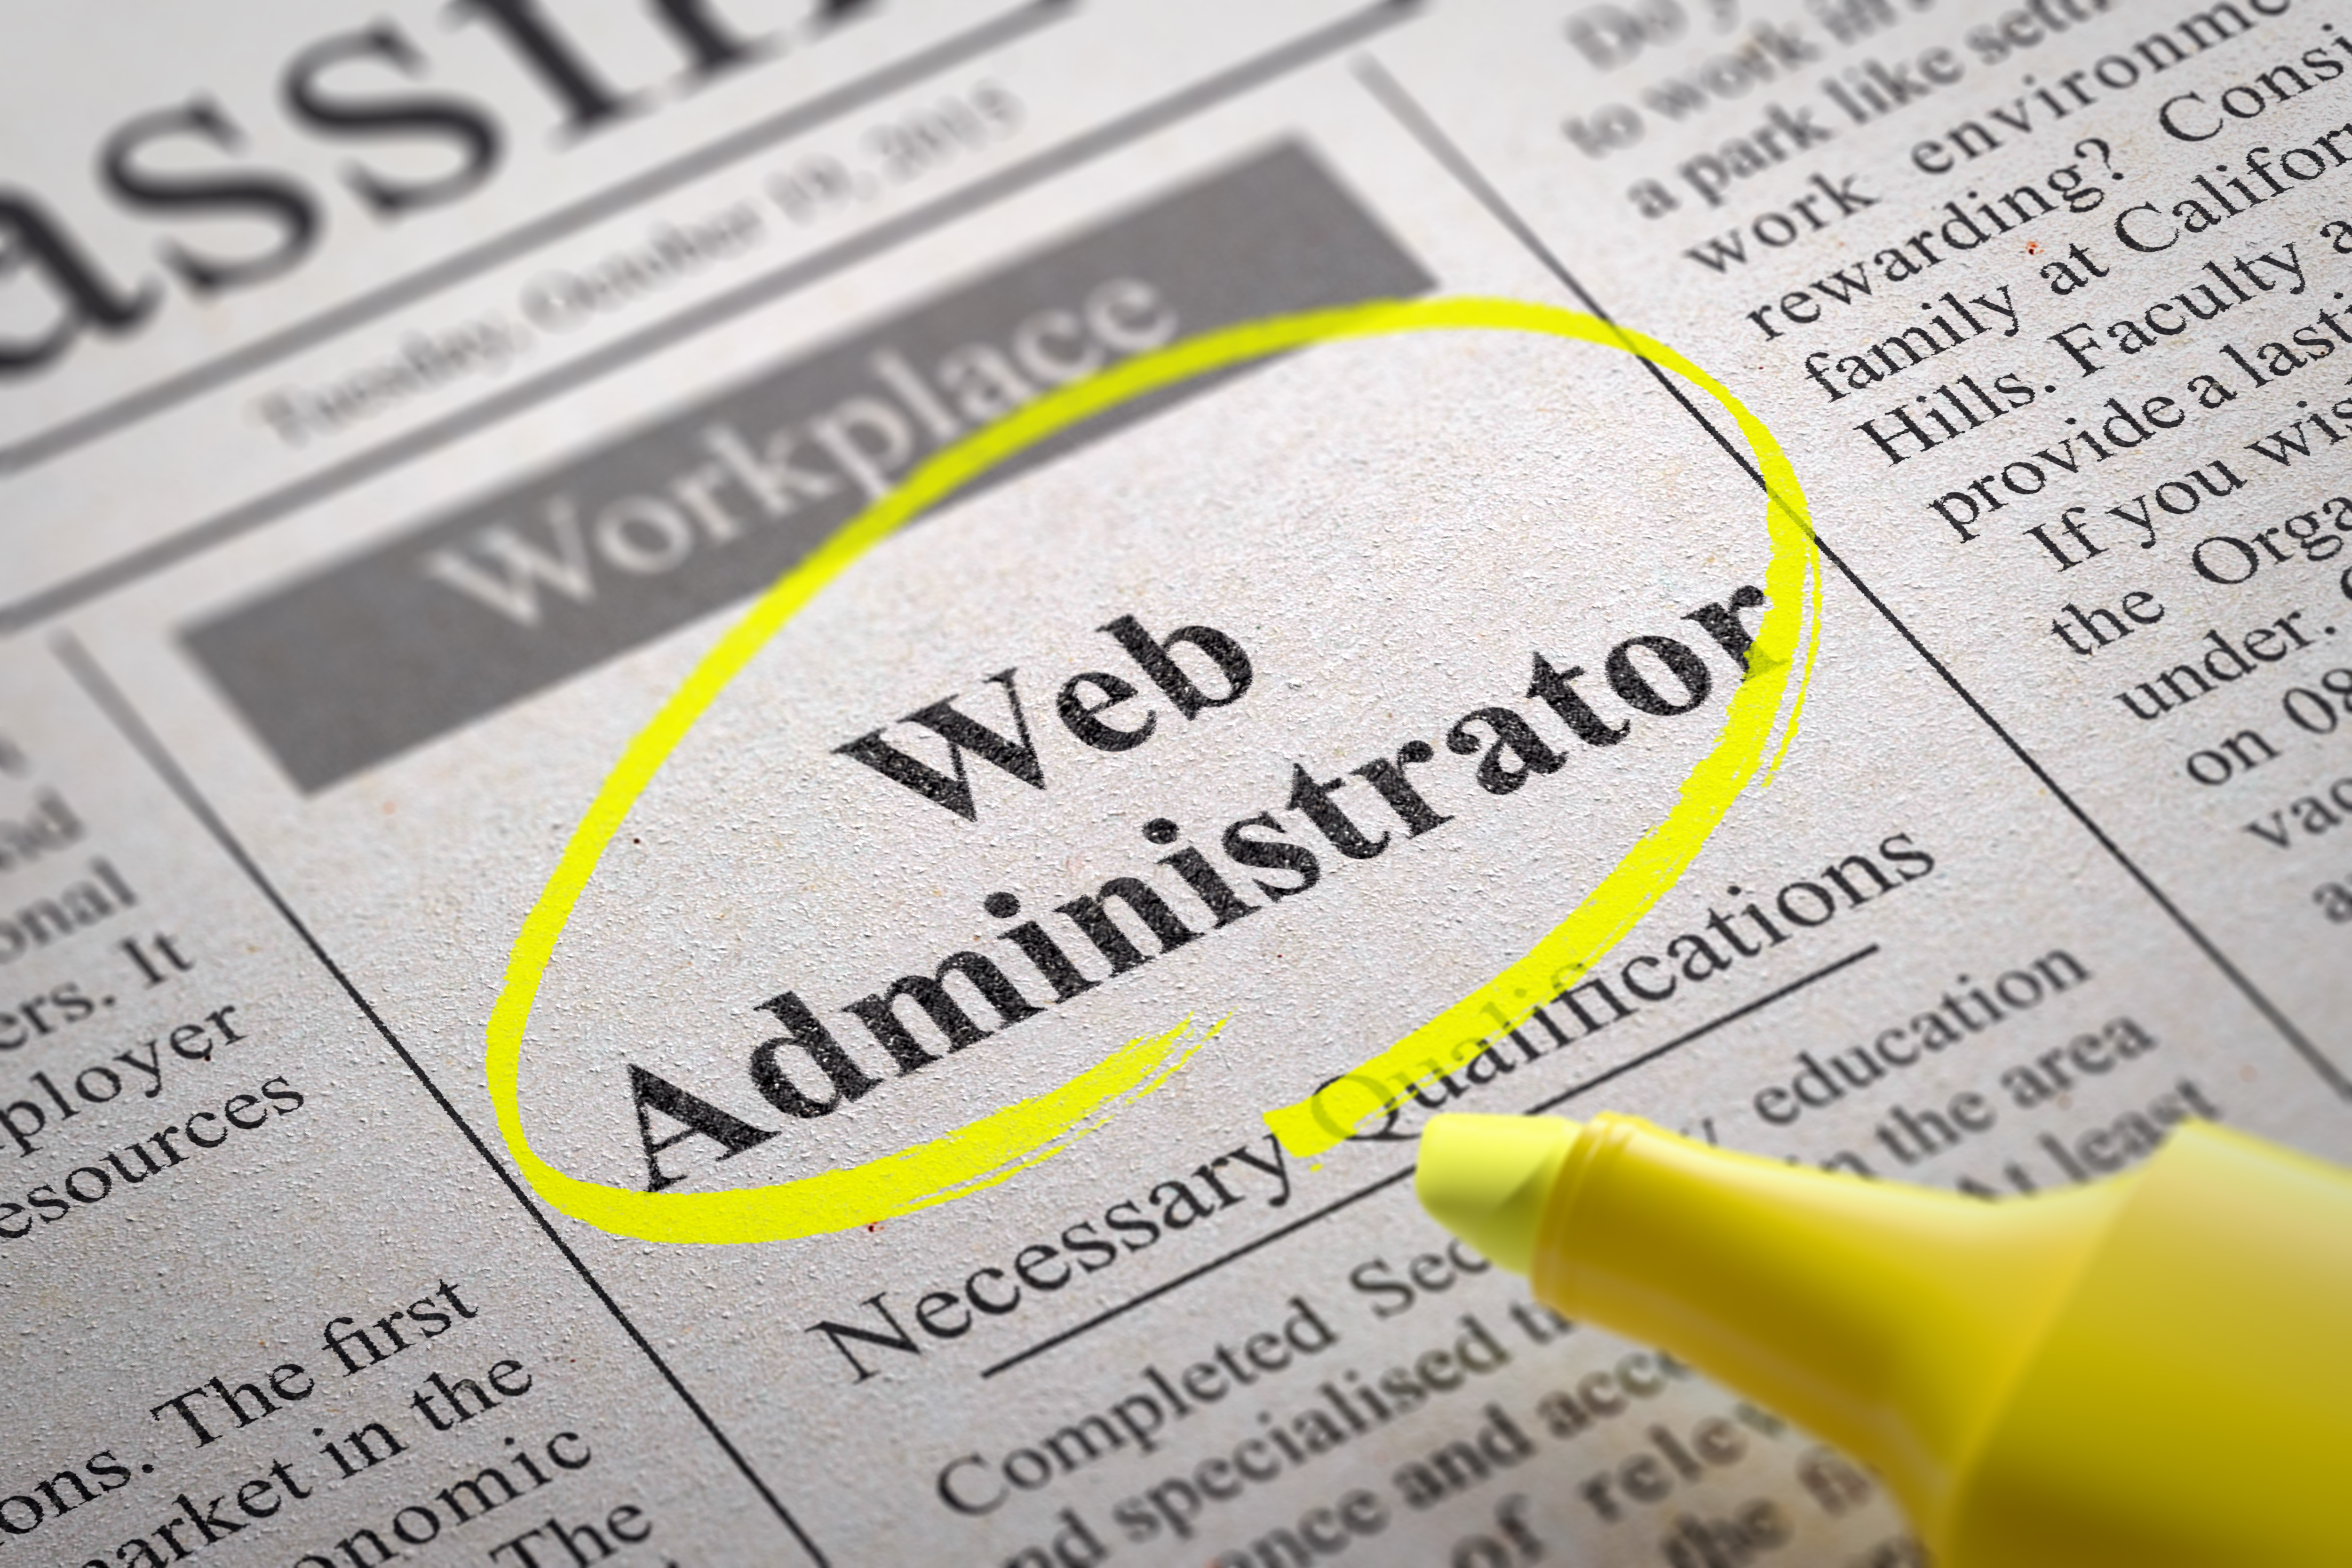 Need a Web Admin?